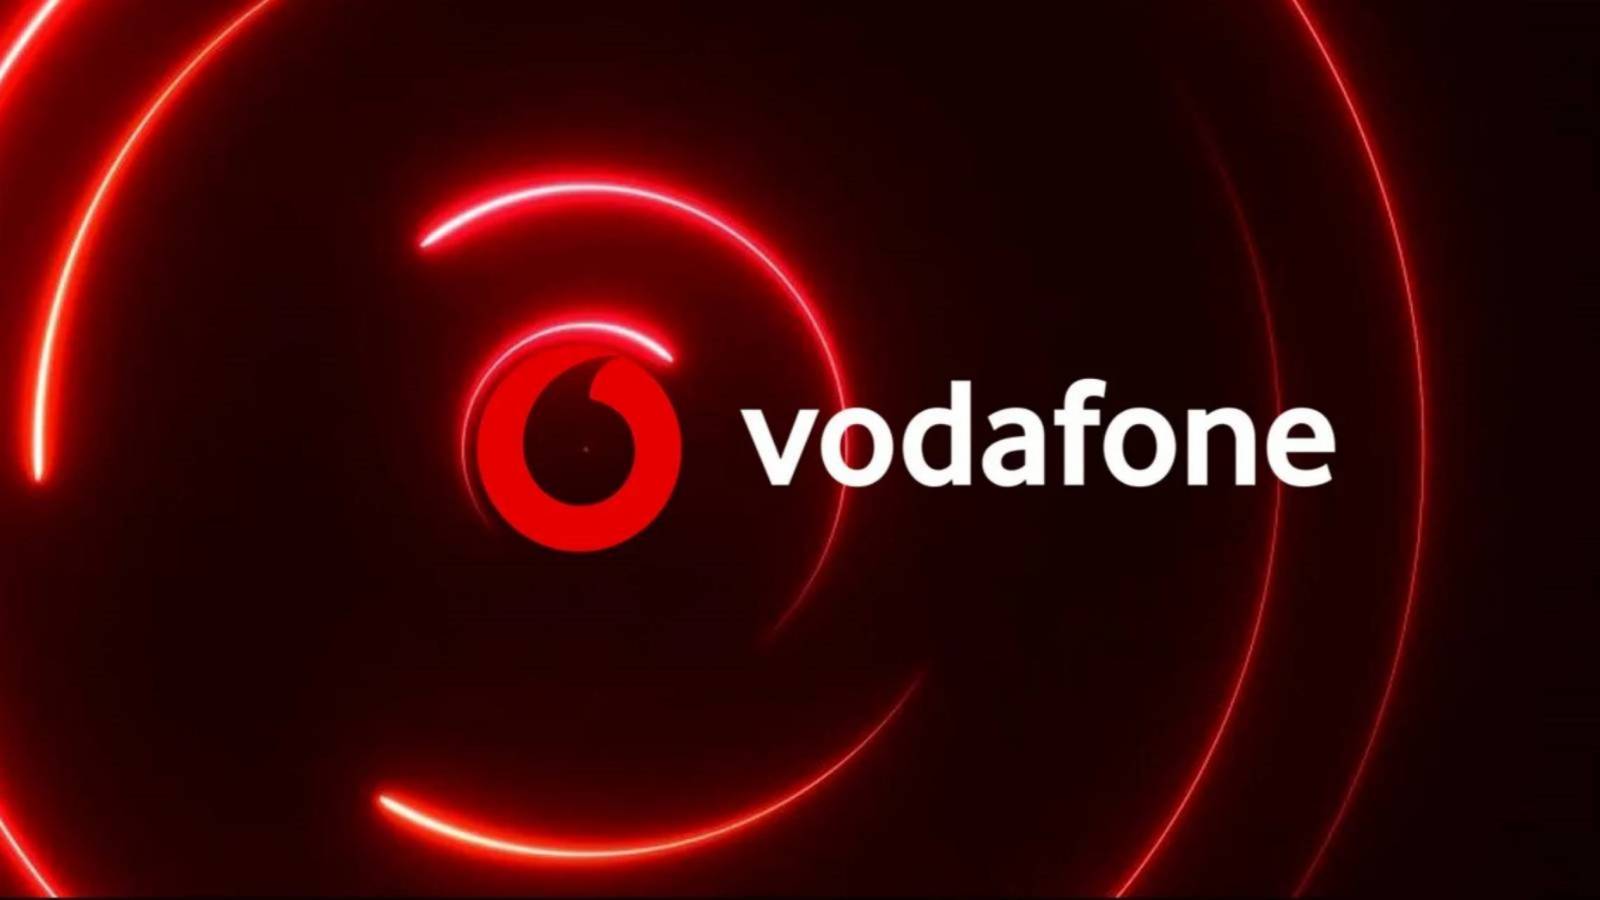 VodafoneBlack Friday 2020